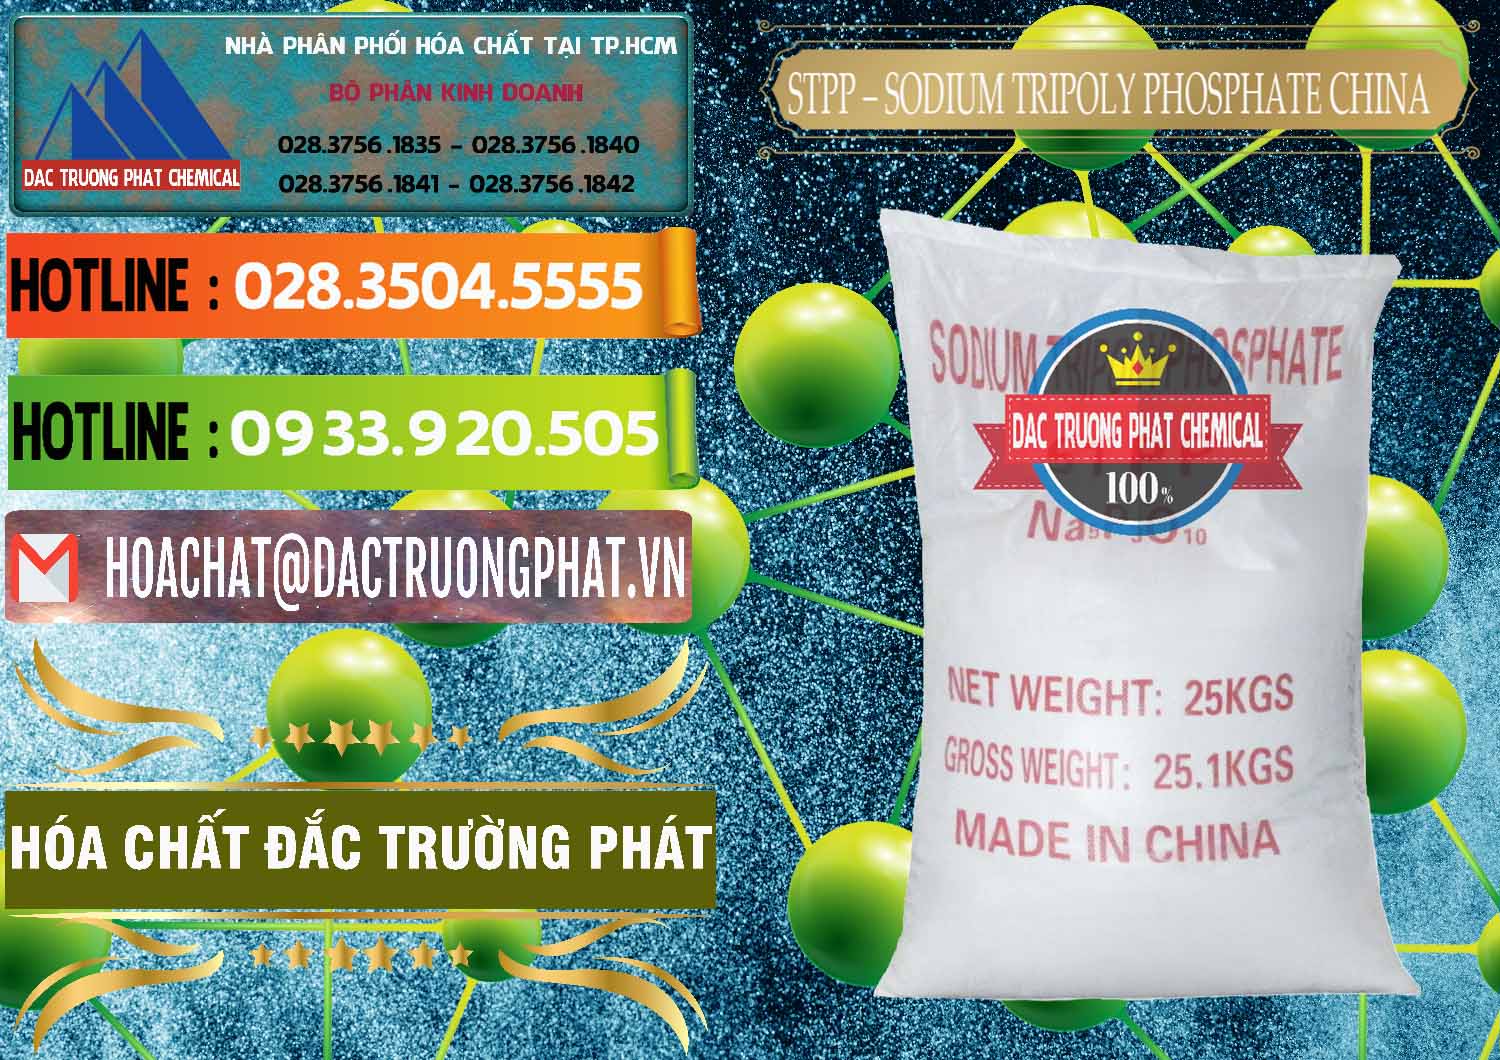 Chuyên bán và cung ứng Sodium Tripoly Phosphate - STPP 96% Chữ Đỏ Trung Quốc China - 0155 - Công ty cung cấp & bán hóa chất tại TP.HCM - cungcaphoachat.com.vn